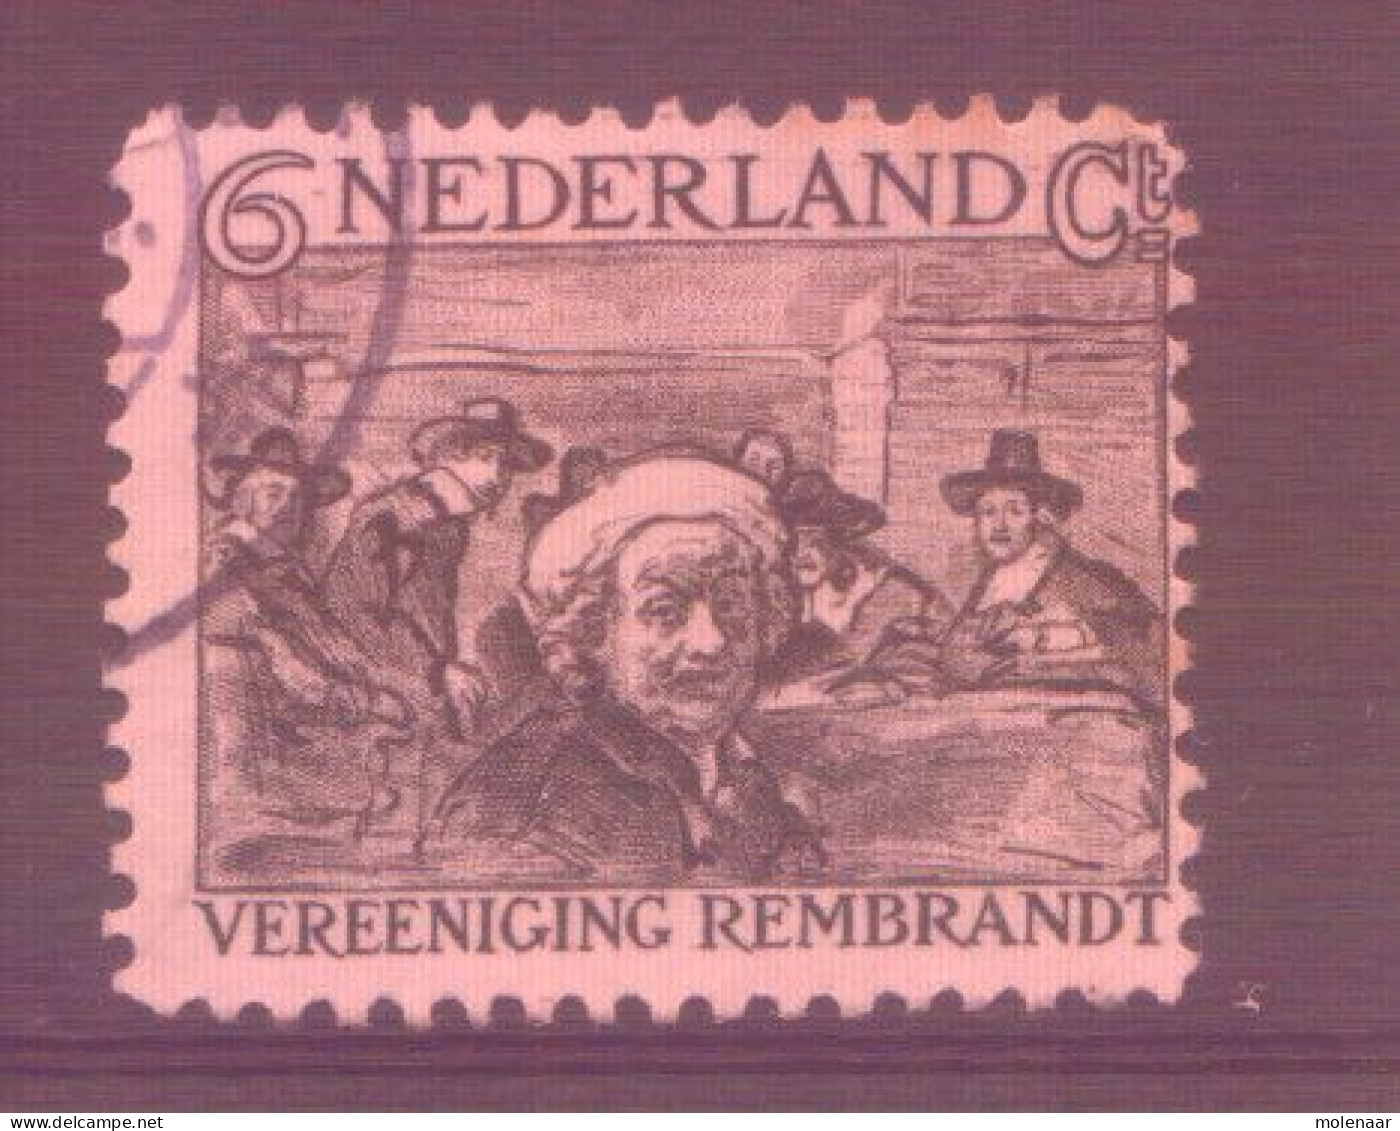 Postzegels > Europa > Nederland > Periode 1891-1948 (Wilhelmina) > 1891-1909 > 230 Gebruikt (11762) - Oblitérés